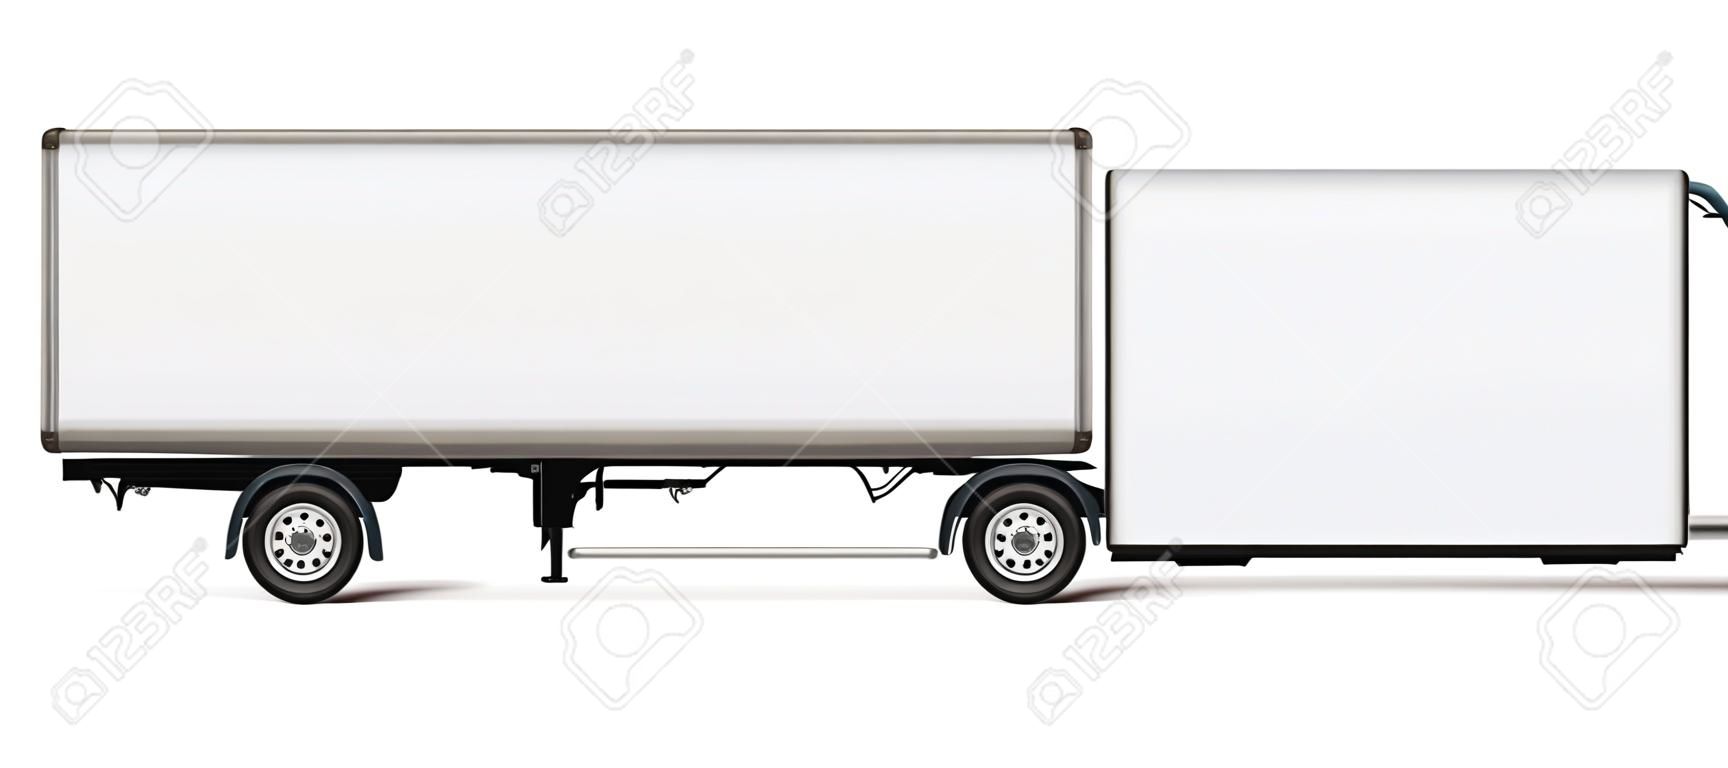 Plantilla de vector de camión semirremolque. Camión aislado con remolque en blanco para marca de vehículo, identidad corporativa. Todos los elementos de los grupos en capas independientes para editarlos y cambiar el color fácilmente